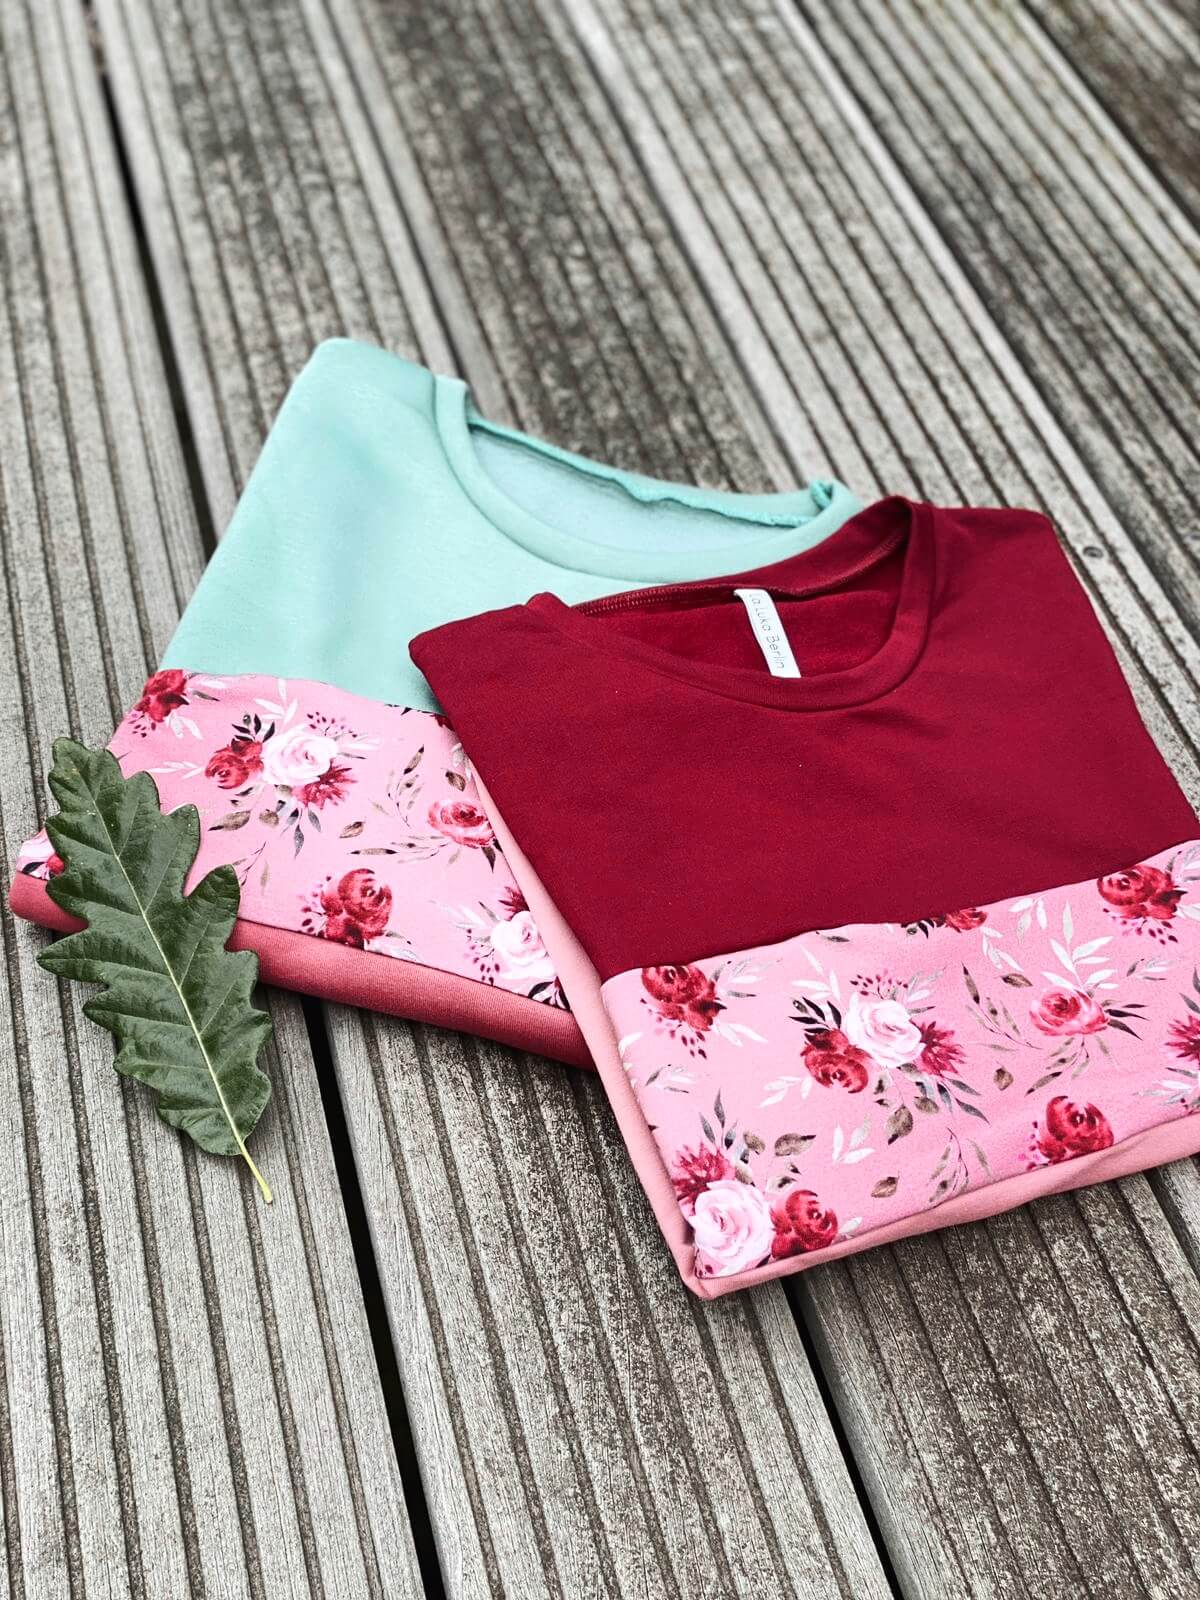 Zwei Pullover in rose mit Blumenmuster, liegen zusammengelegt auf Holzboden.